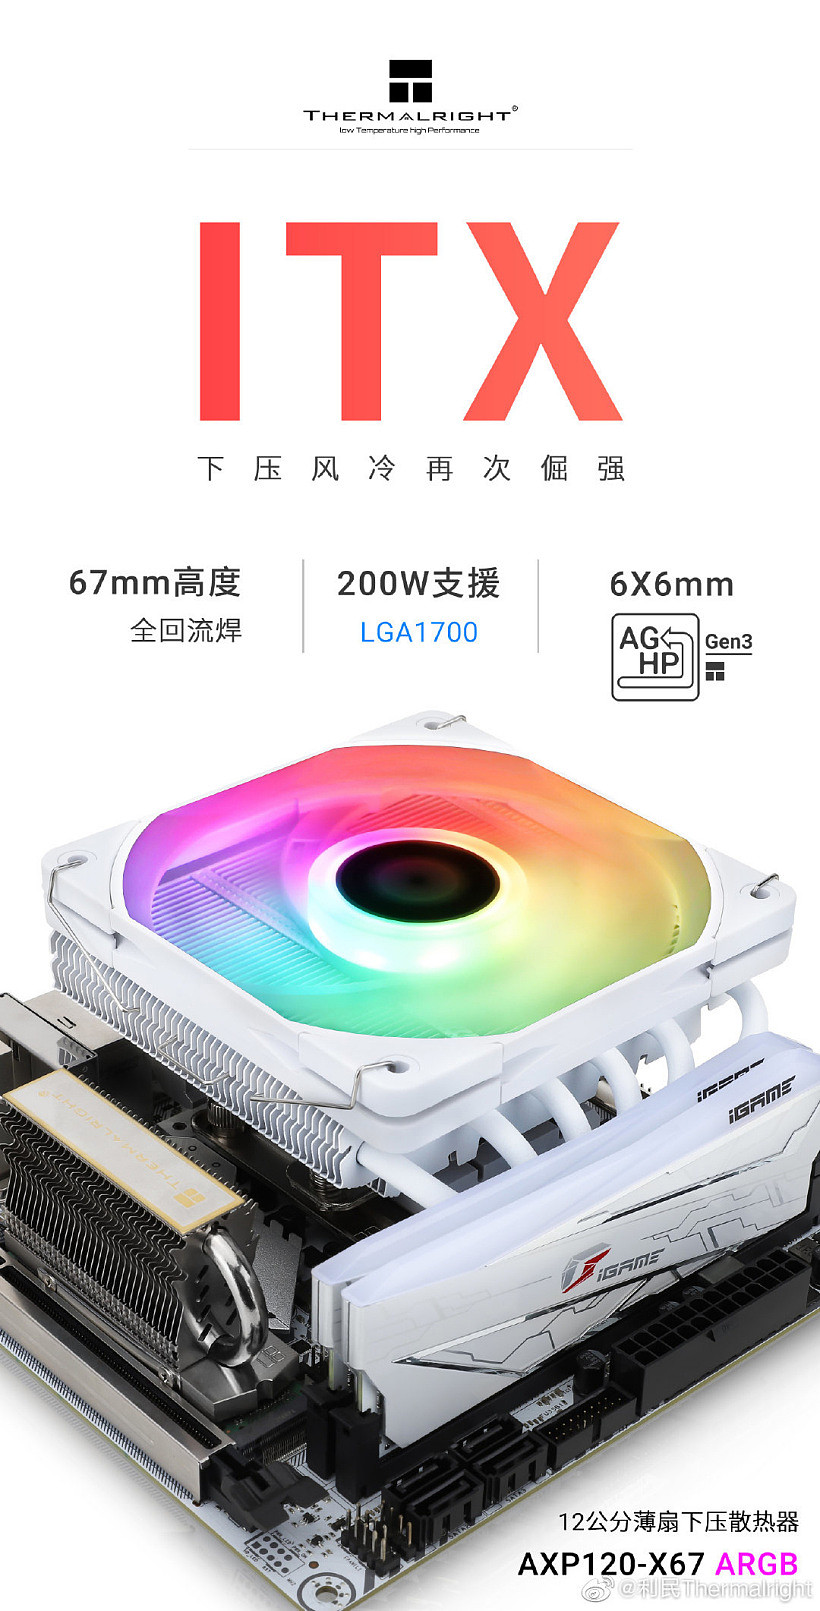 利民推出新款 AXP-120 X67 白色 ARGB 下压式散热器：67mm 高，可压 200W - 1